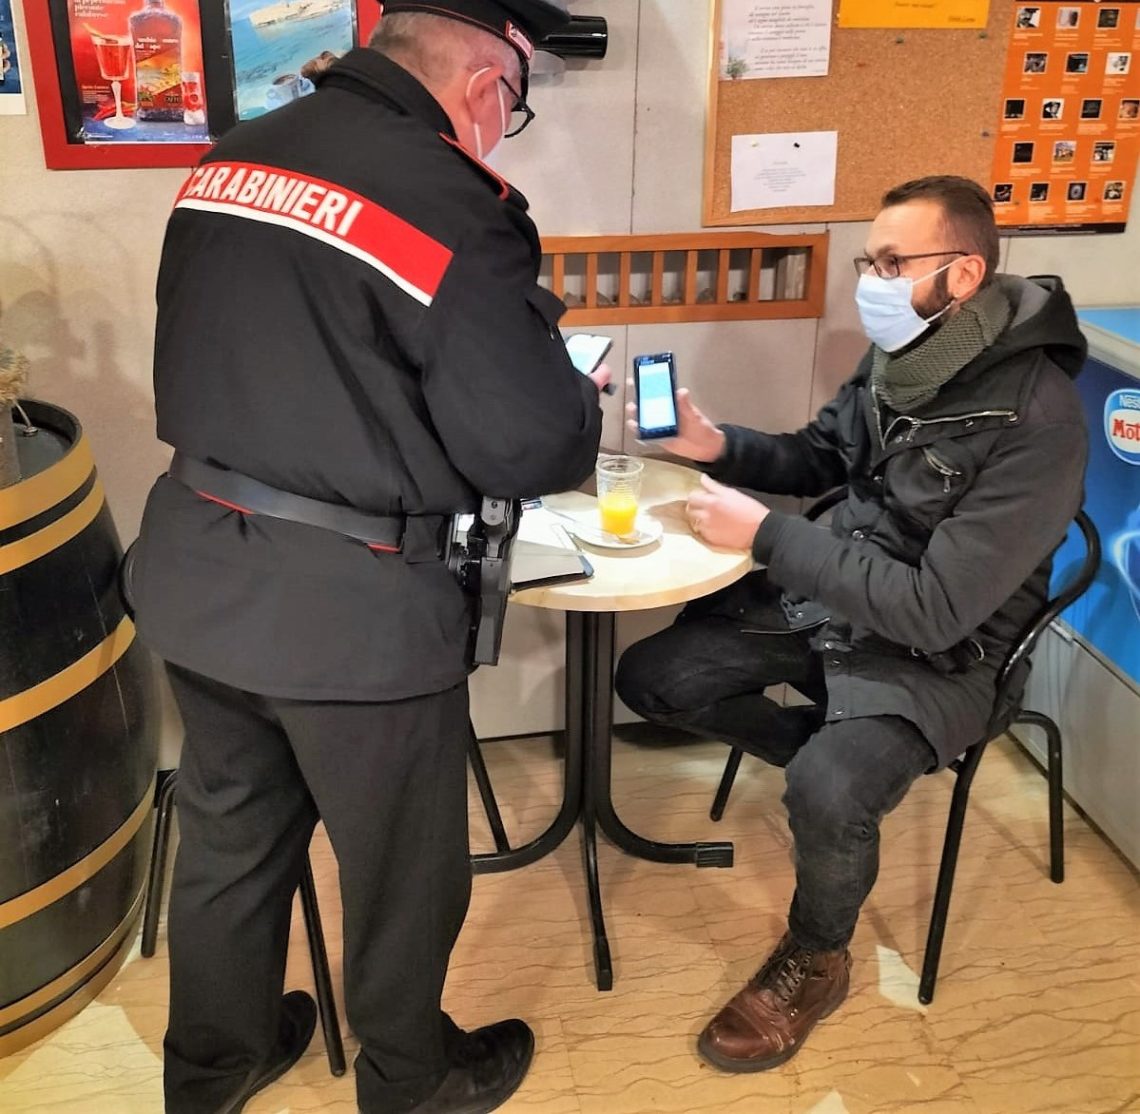 Perugia: due sanzioni amministrative per violazione della normativa Covid